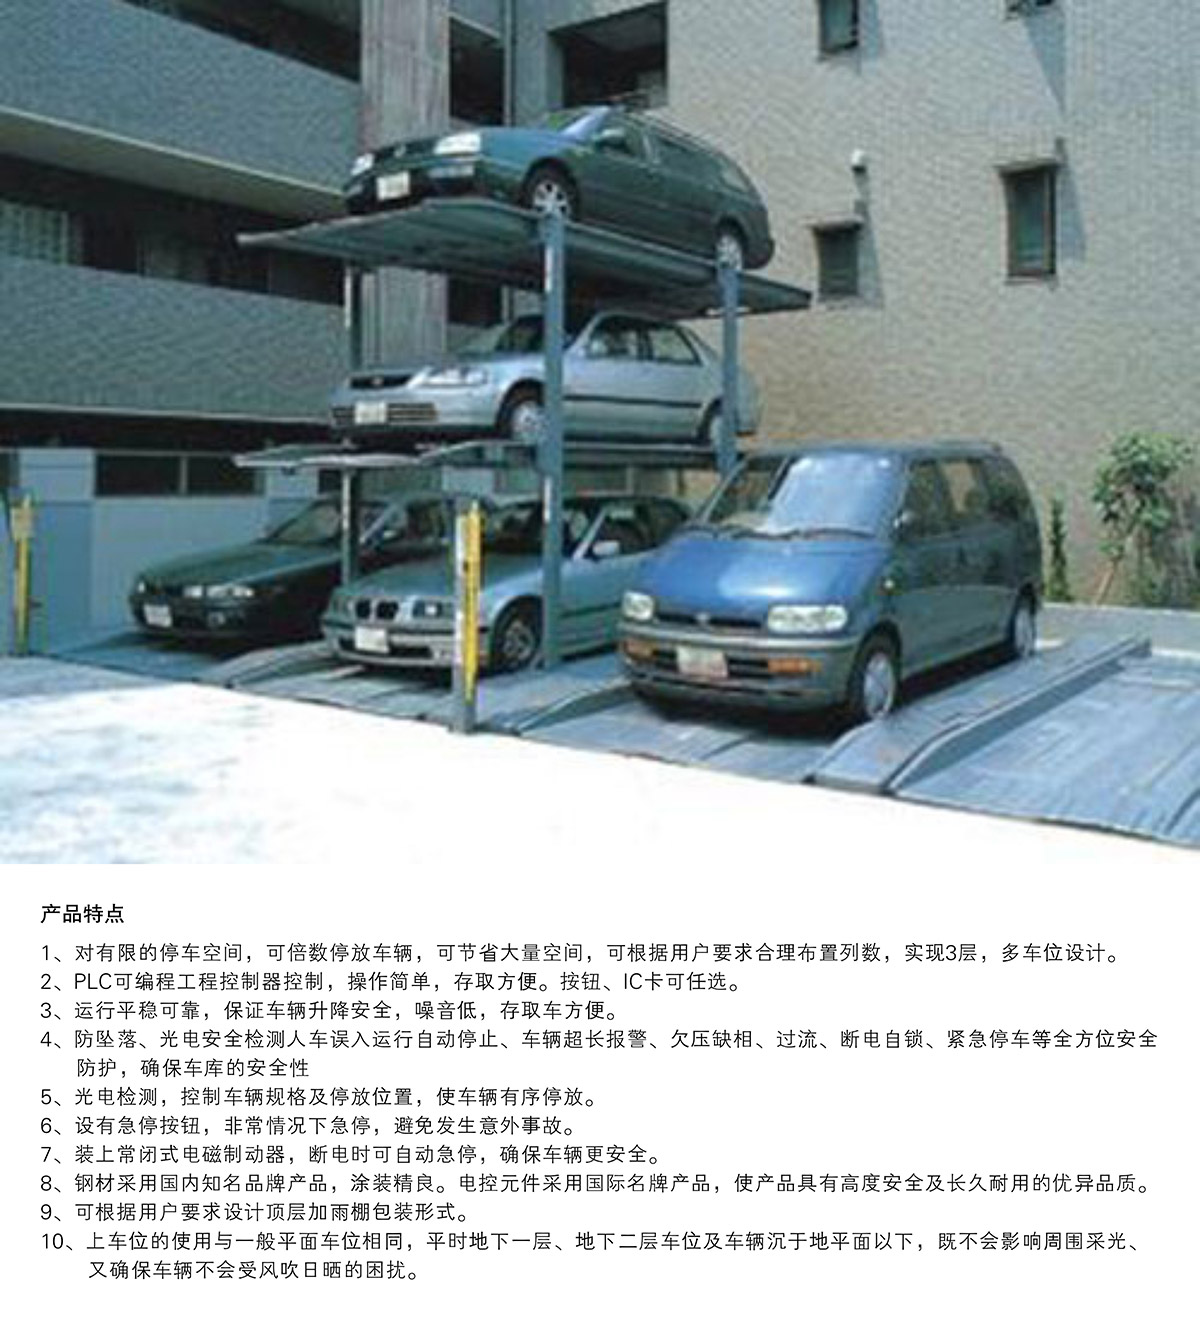 立体停车库07PJS3D2三层地坑简易升降机械立体停车产品特点.jpg